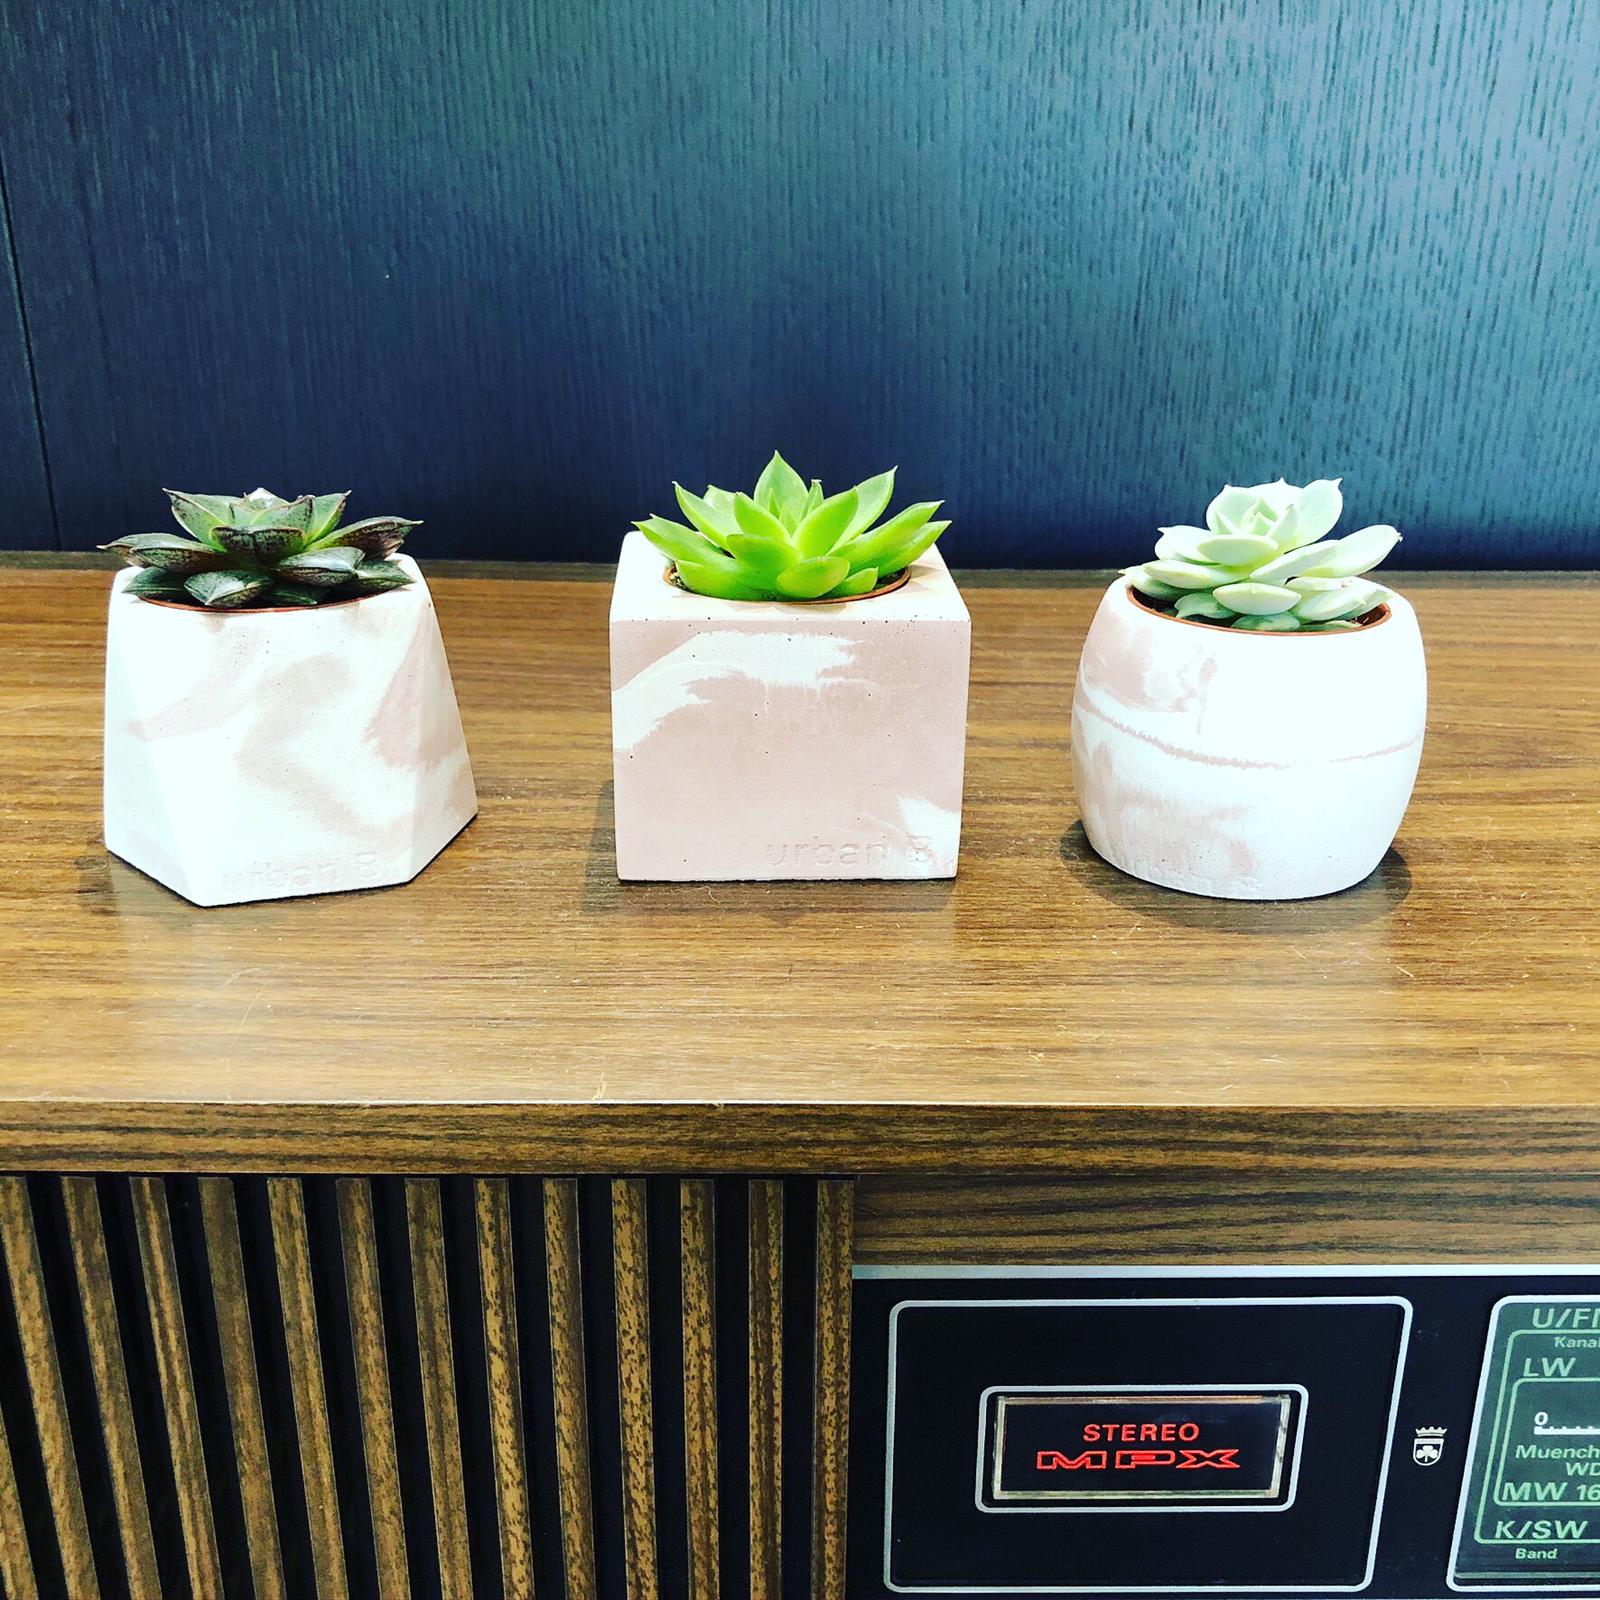 3 Concrete Pots with succulents